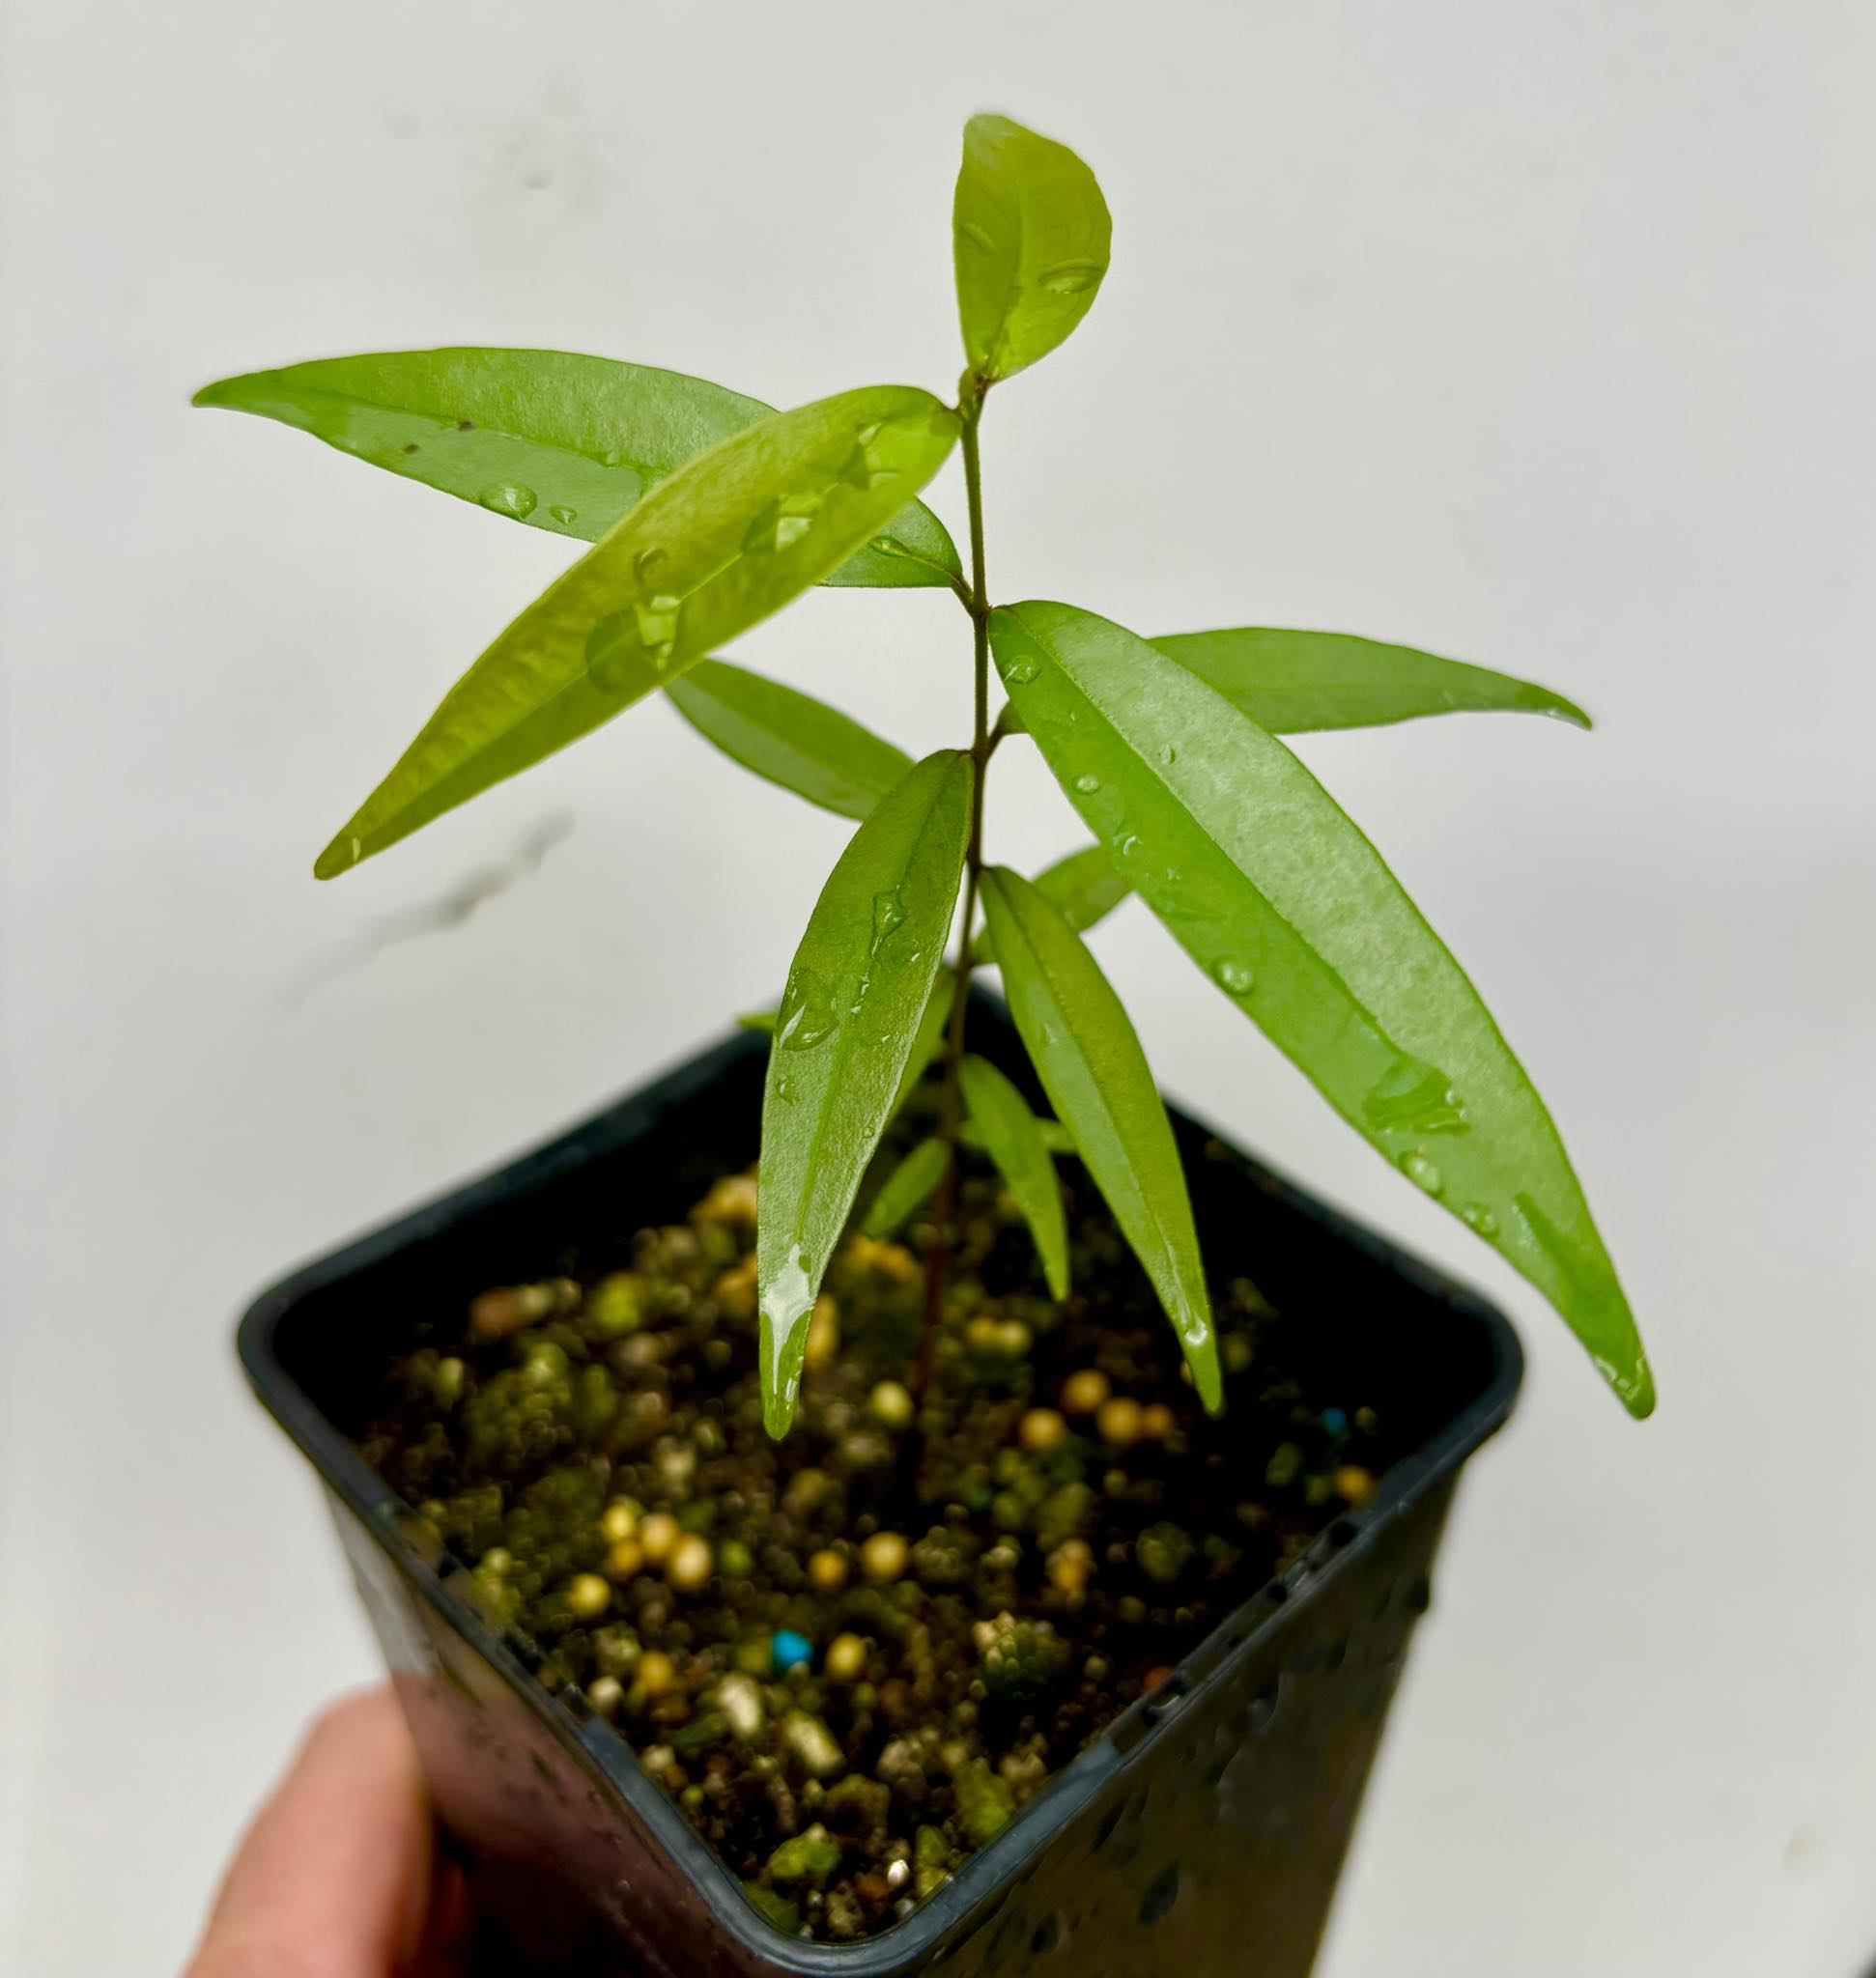 Eugenia pruniformis - Ameixa da Preta - 1 potted plant / 1 getopfte Pflanze